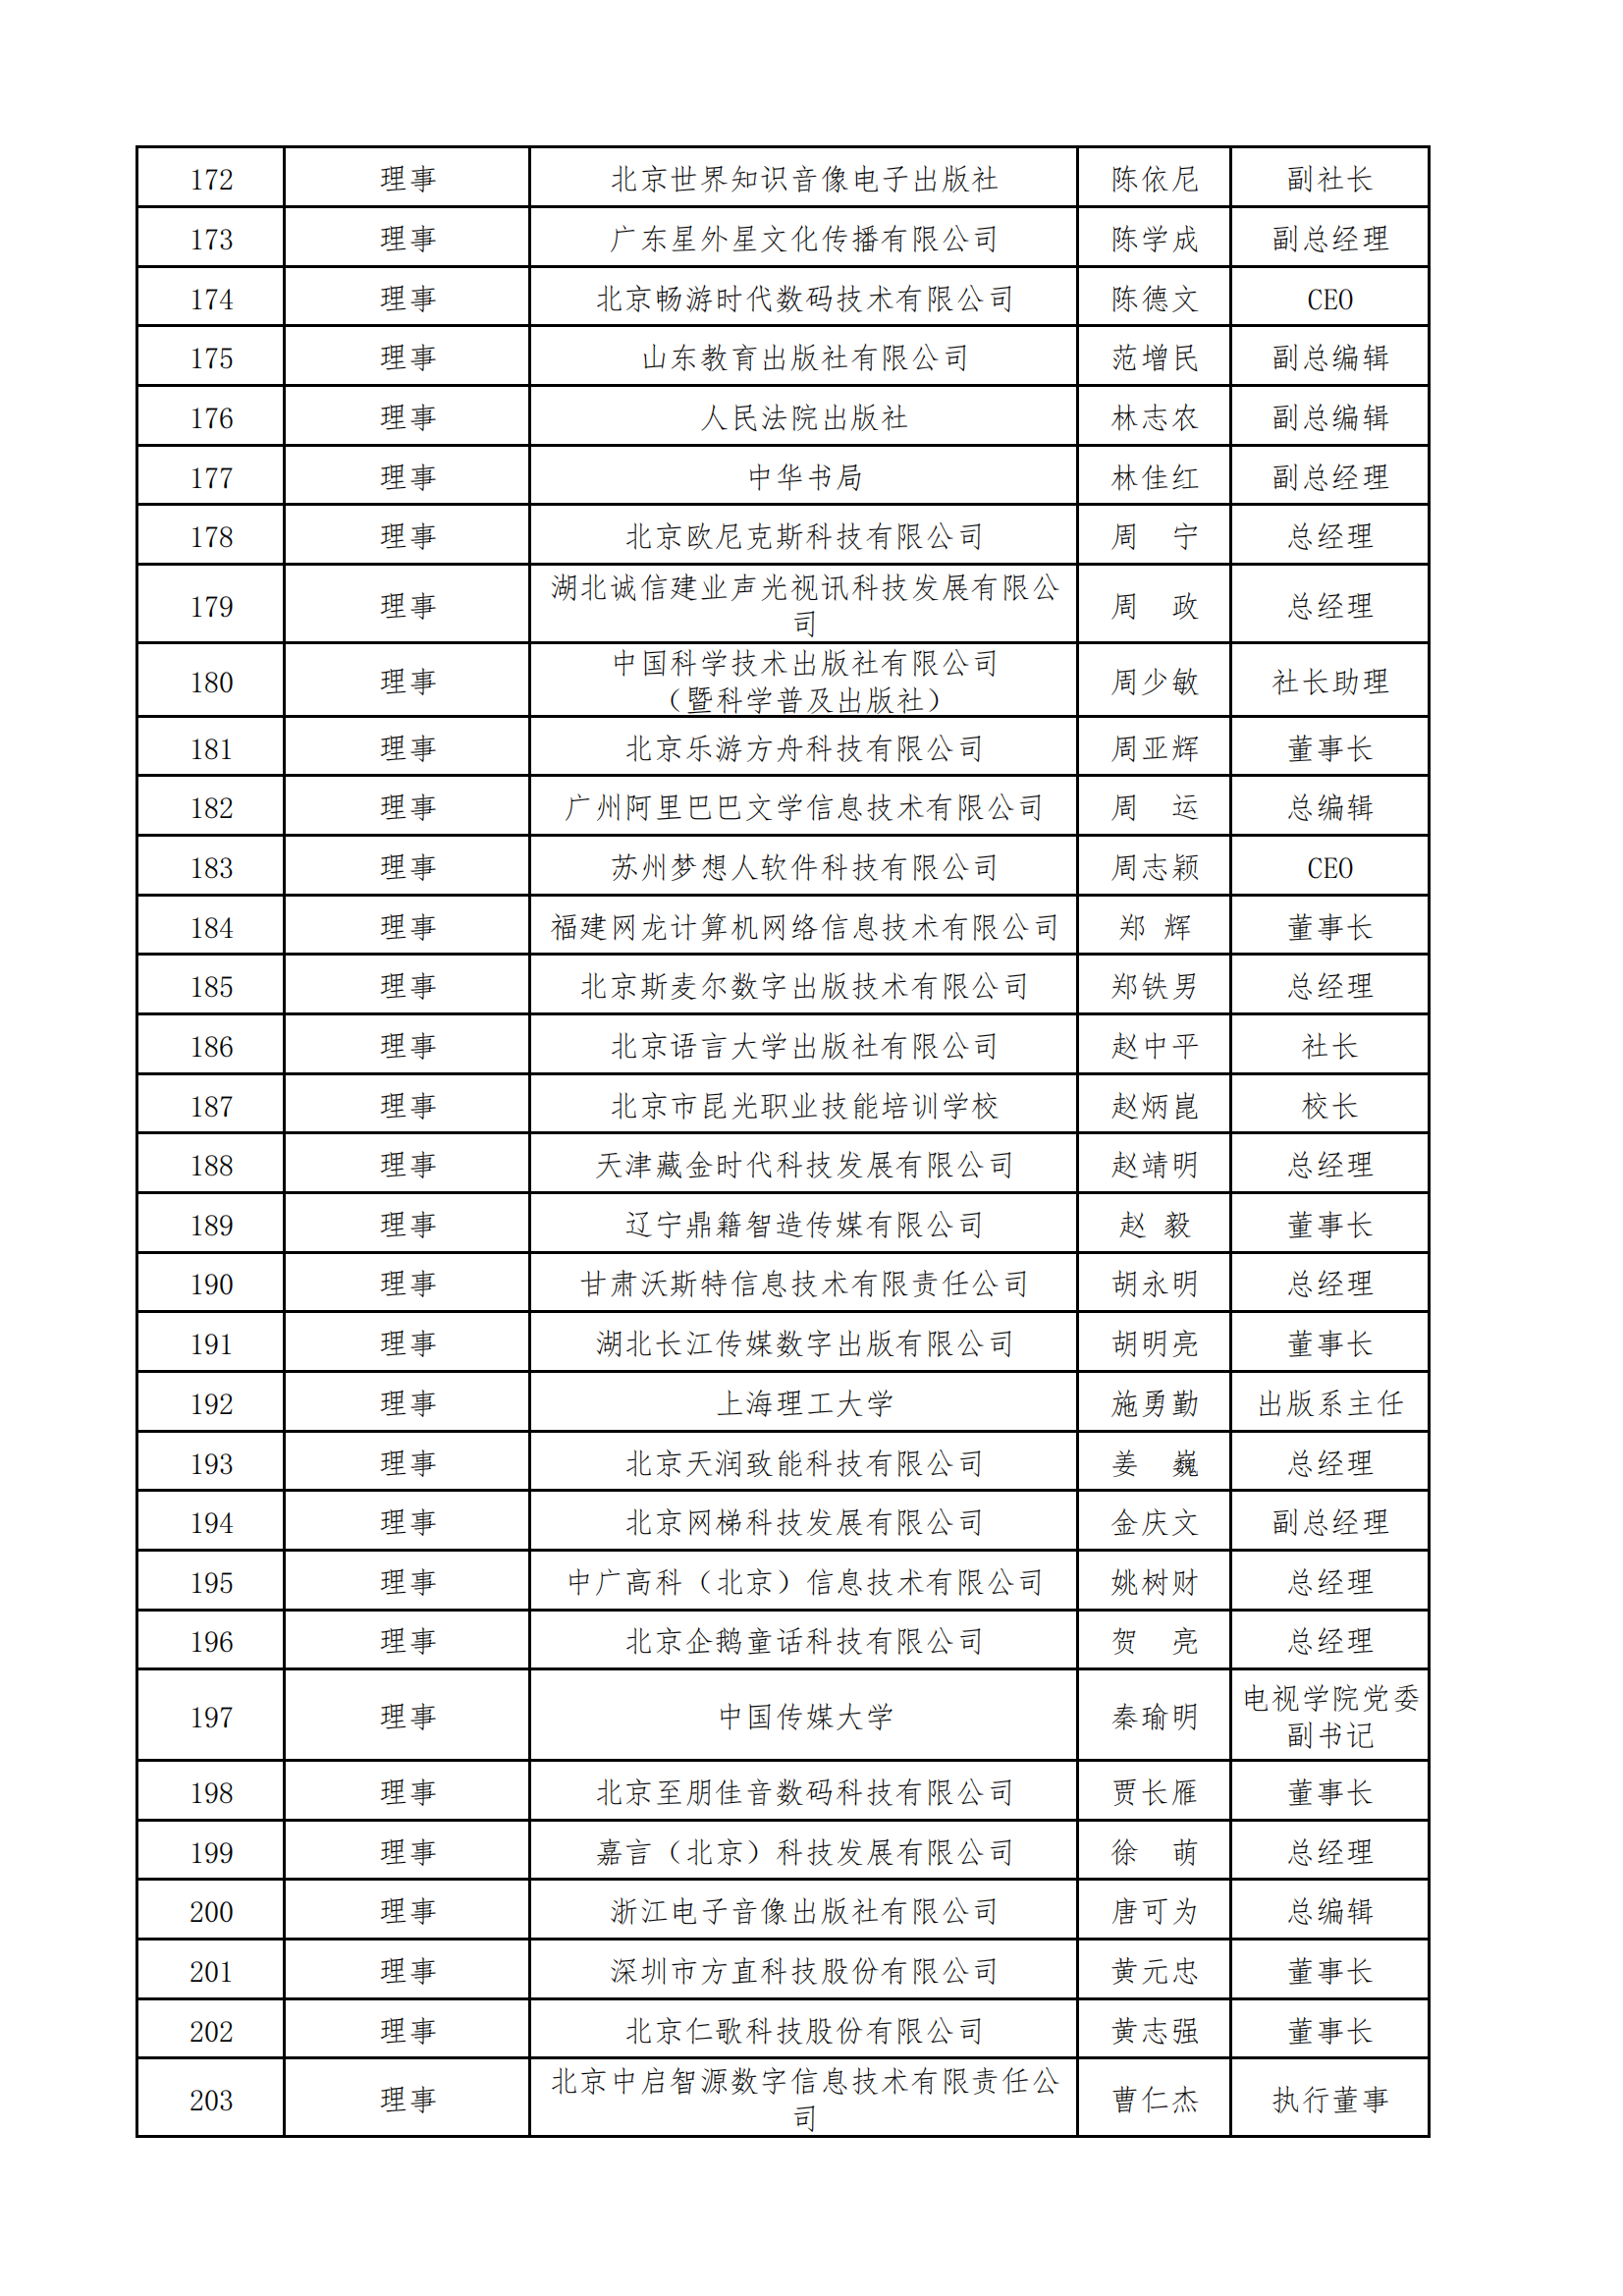 中国音像与数字出版协会第五届理事会名录_06.png